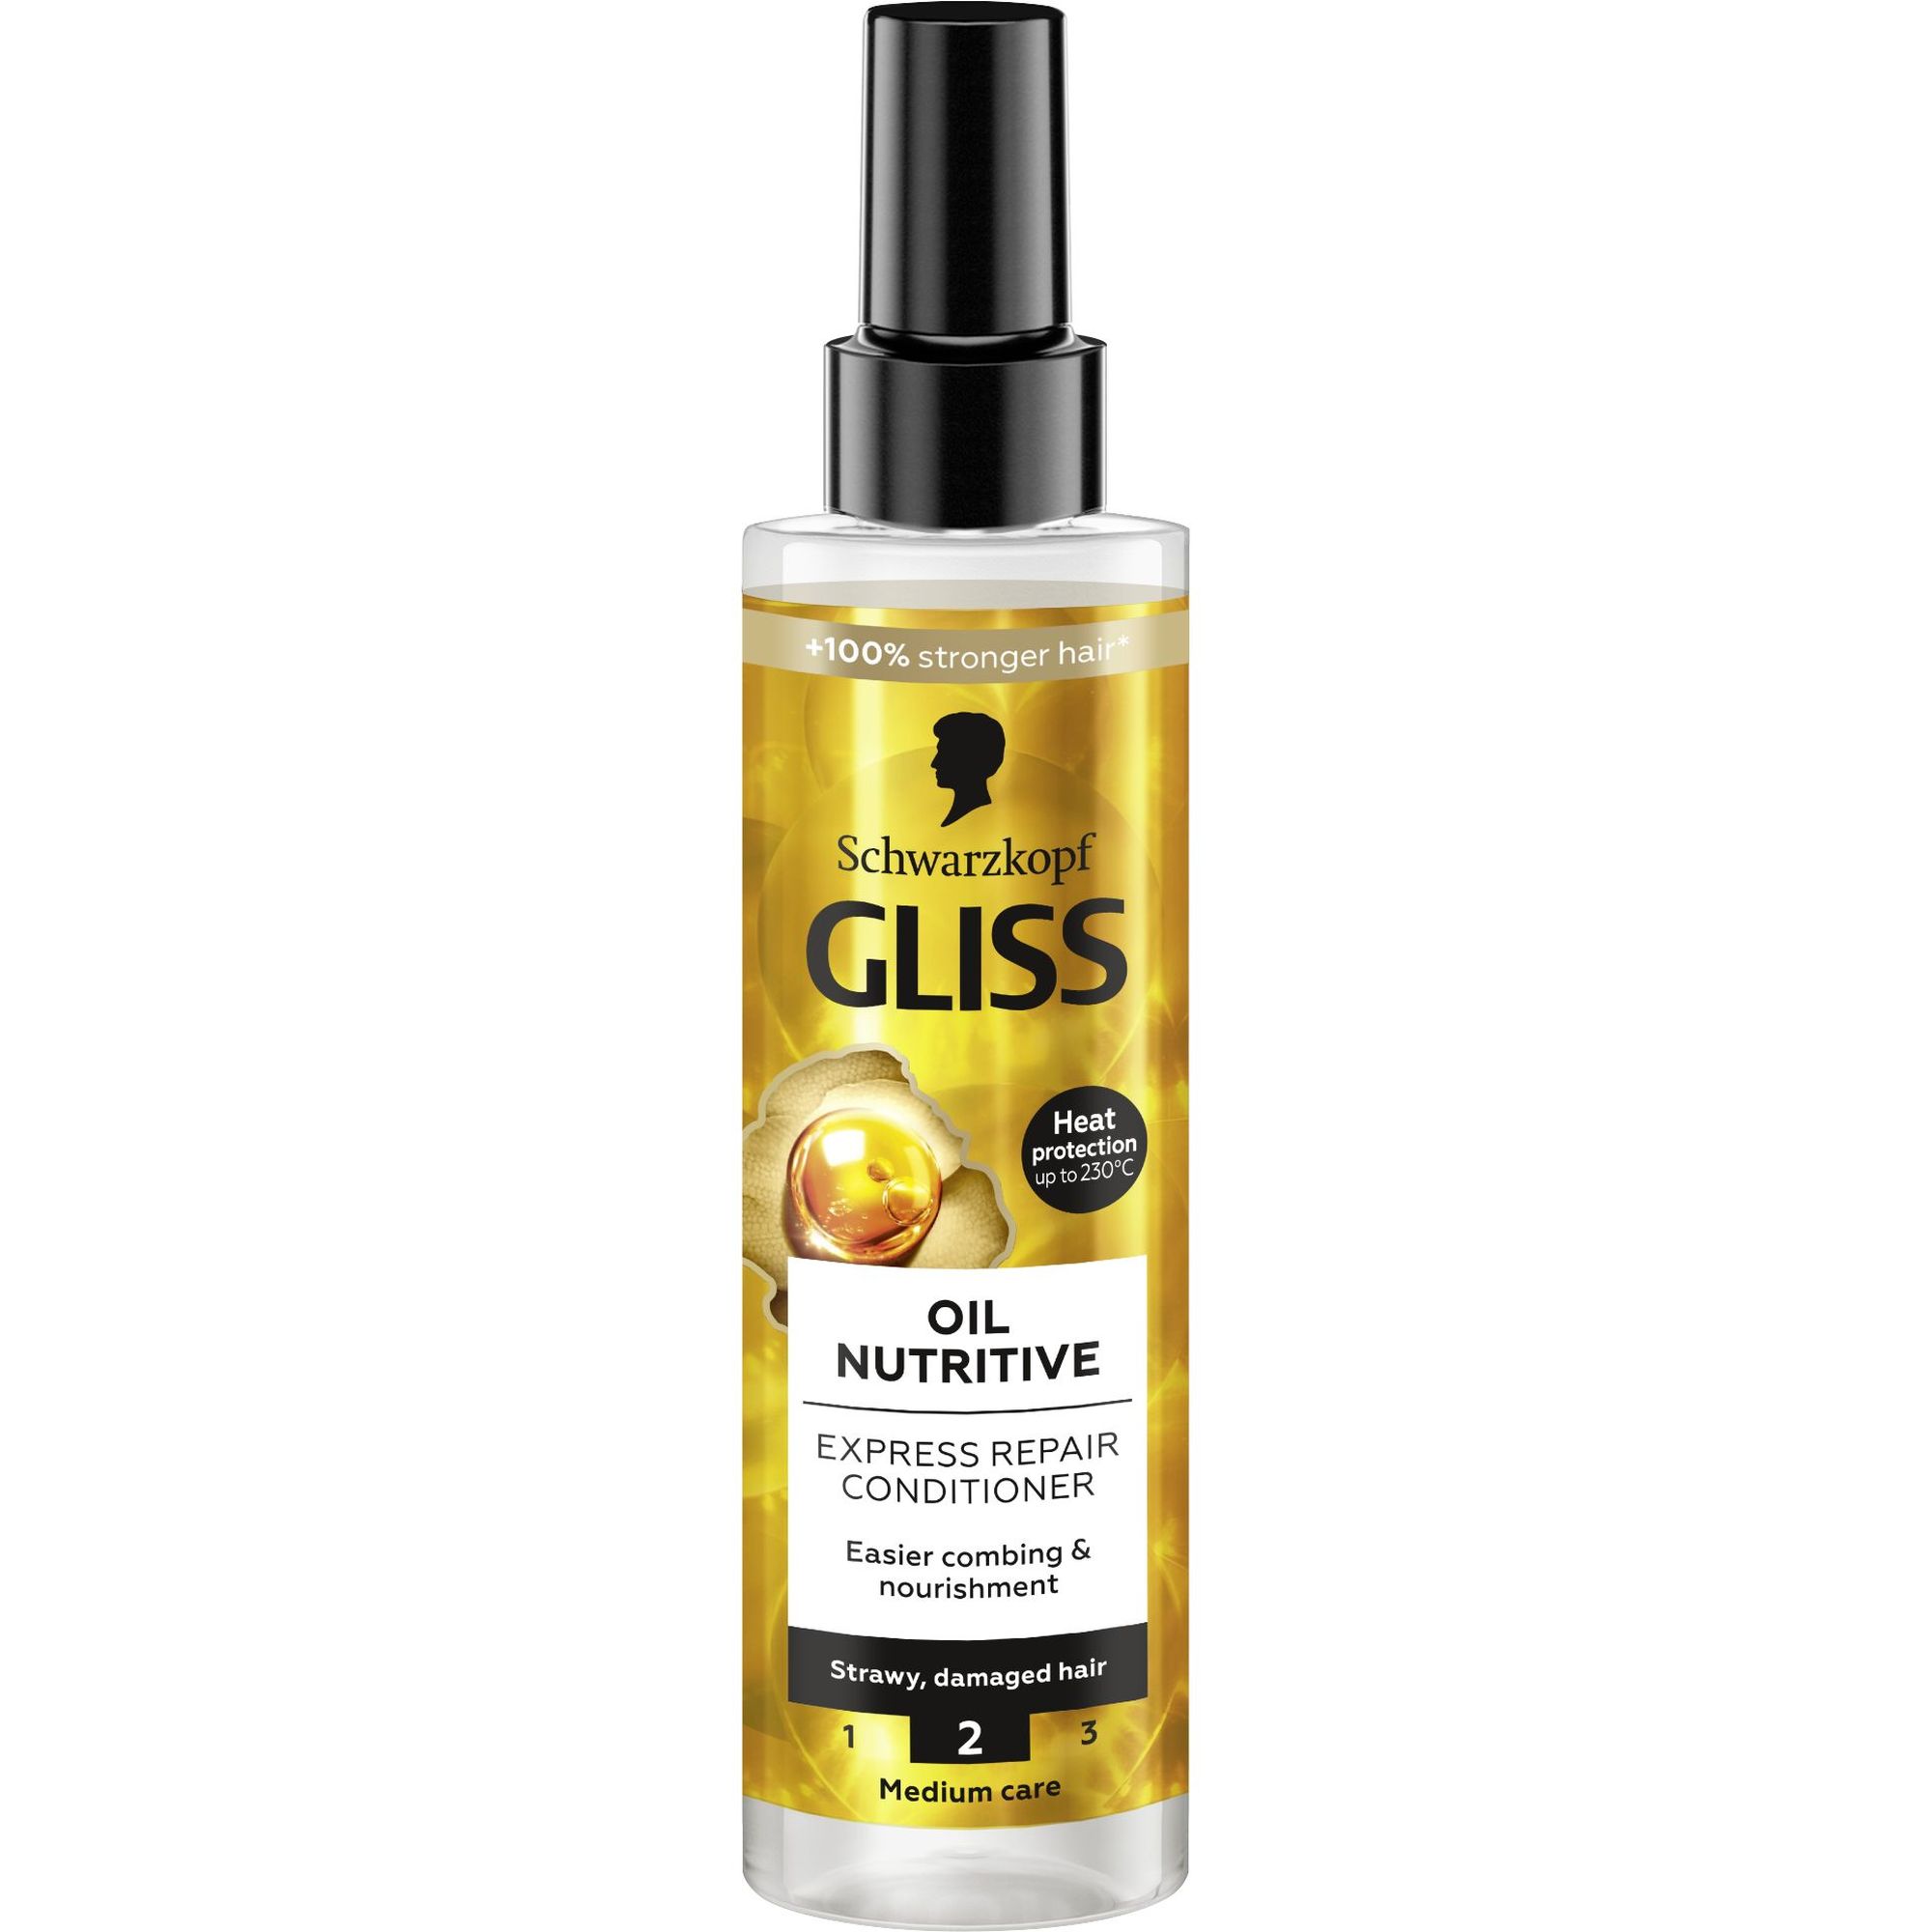 Експрес-кондиціонер Gliss Oil Nutritive для сухого та пошкодженого волосся 200 мл - фото 1